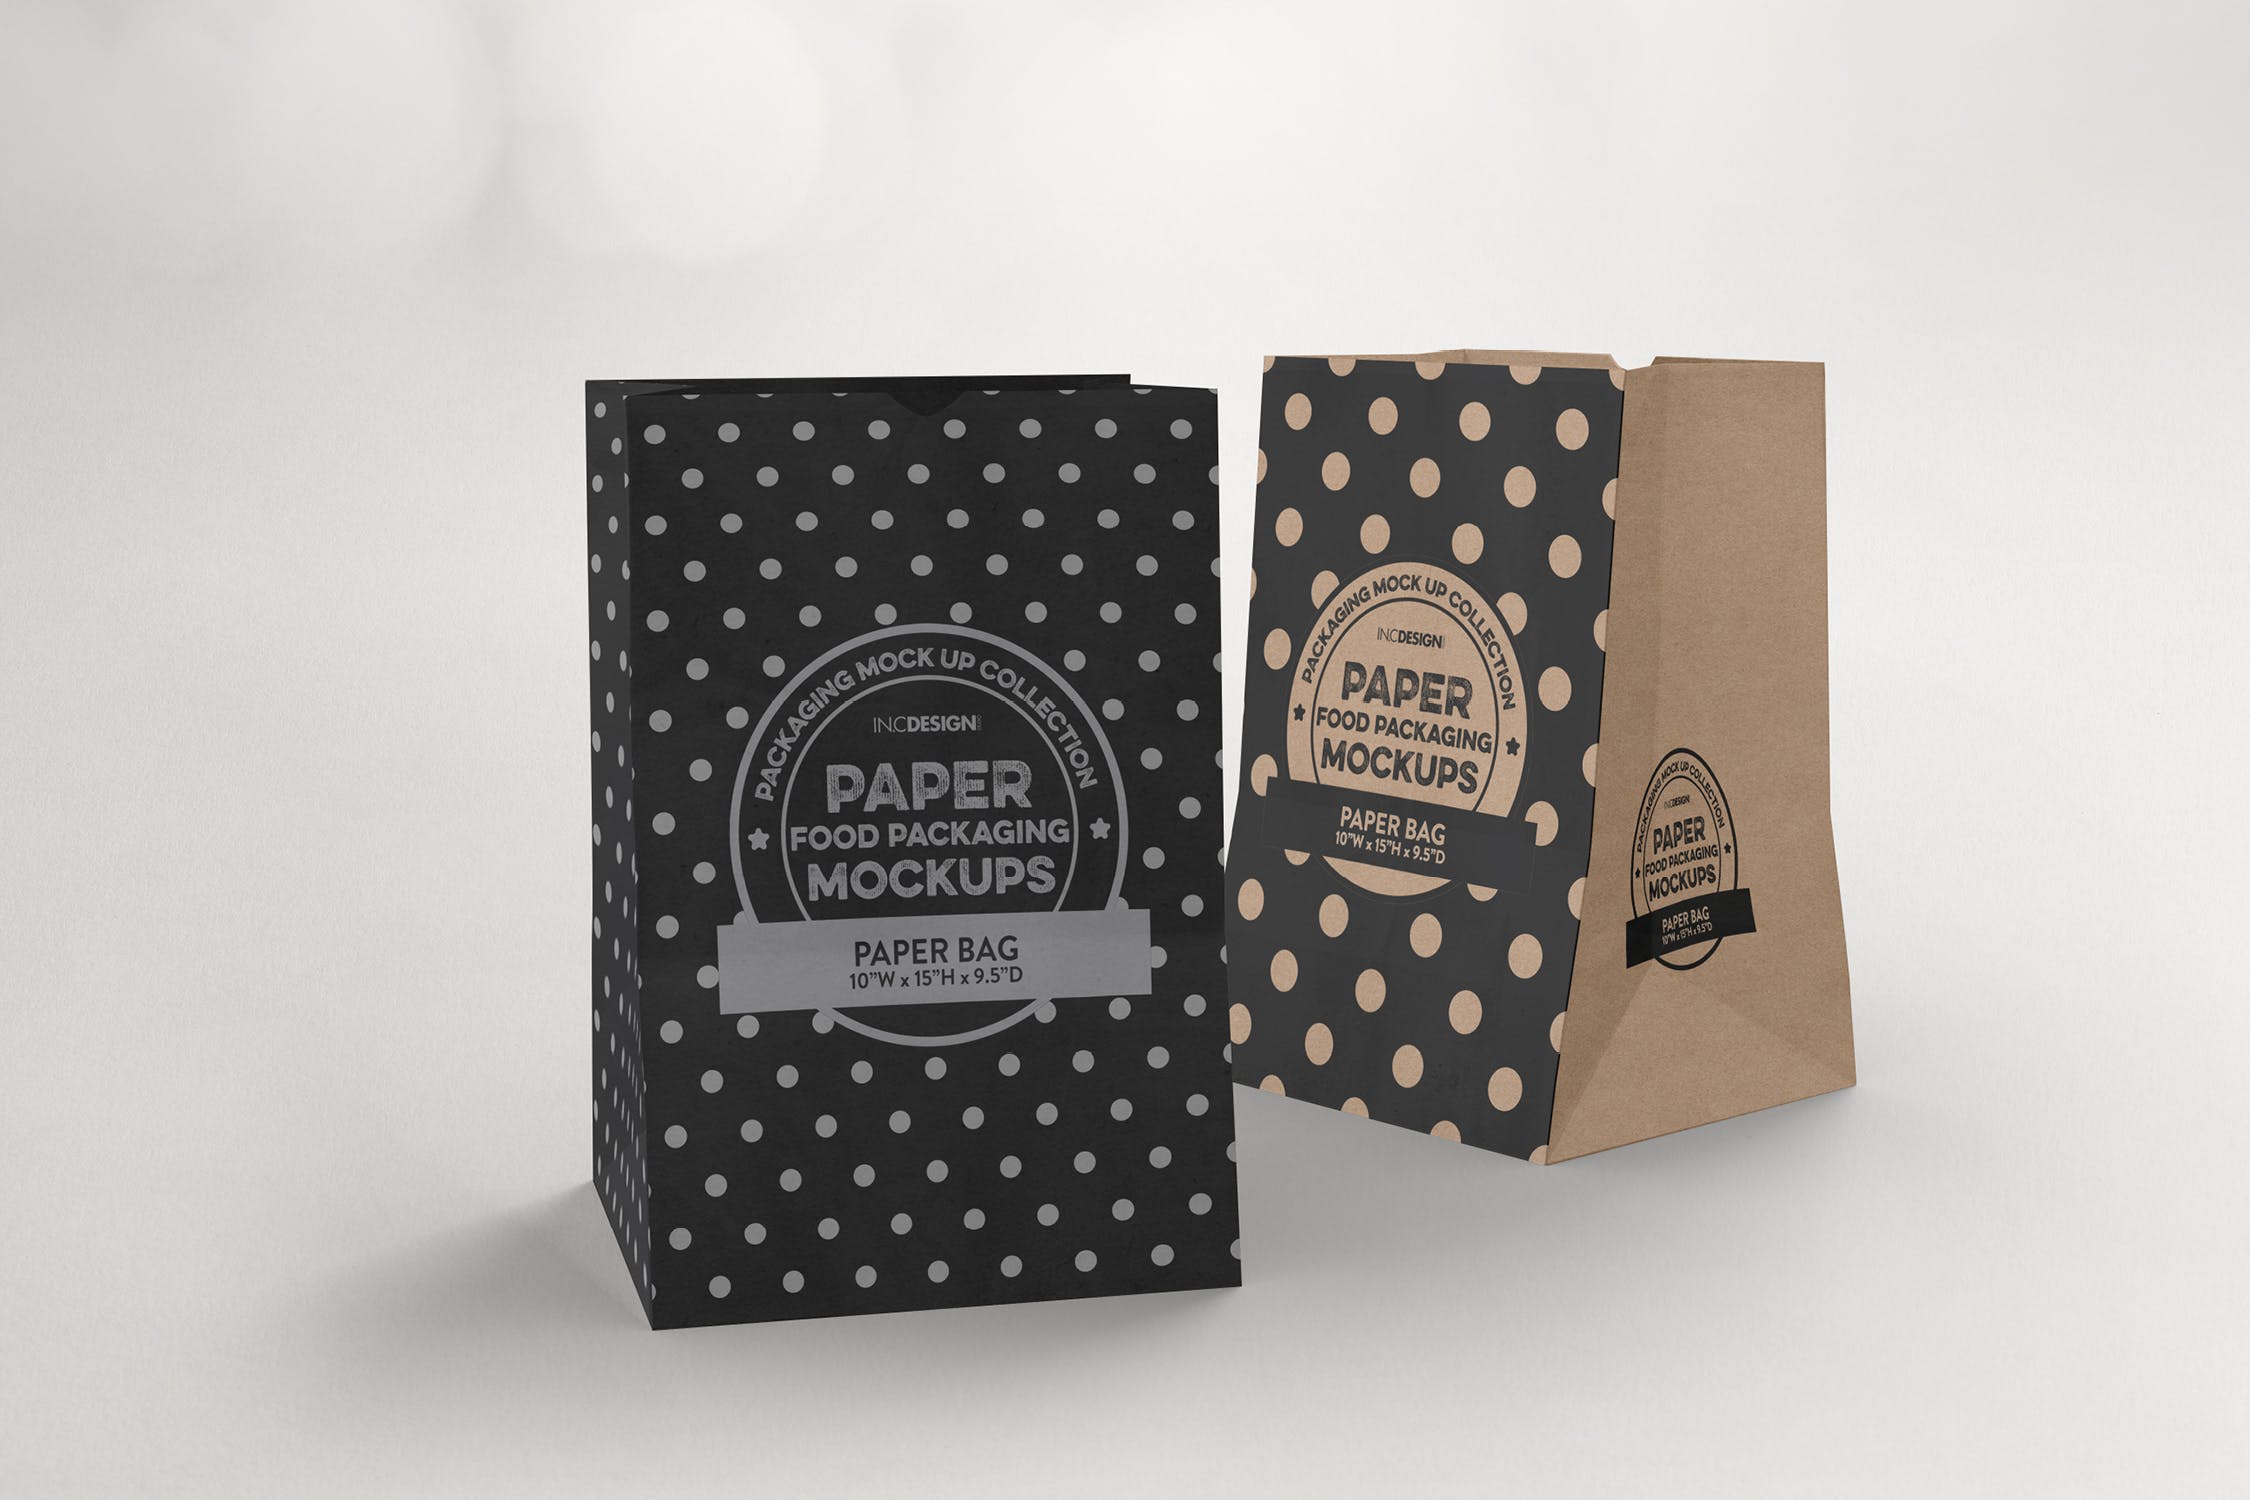 杂货纸袋包装设计效果图非凡图库精选 Grocery Paper Bags Packaging Mockup插图(2)